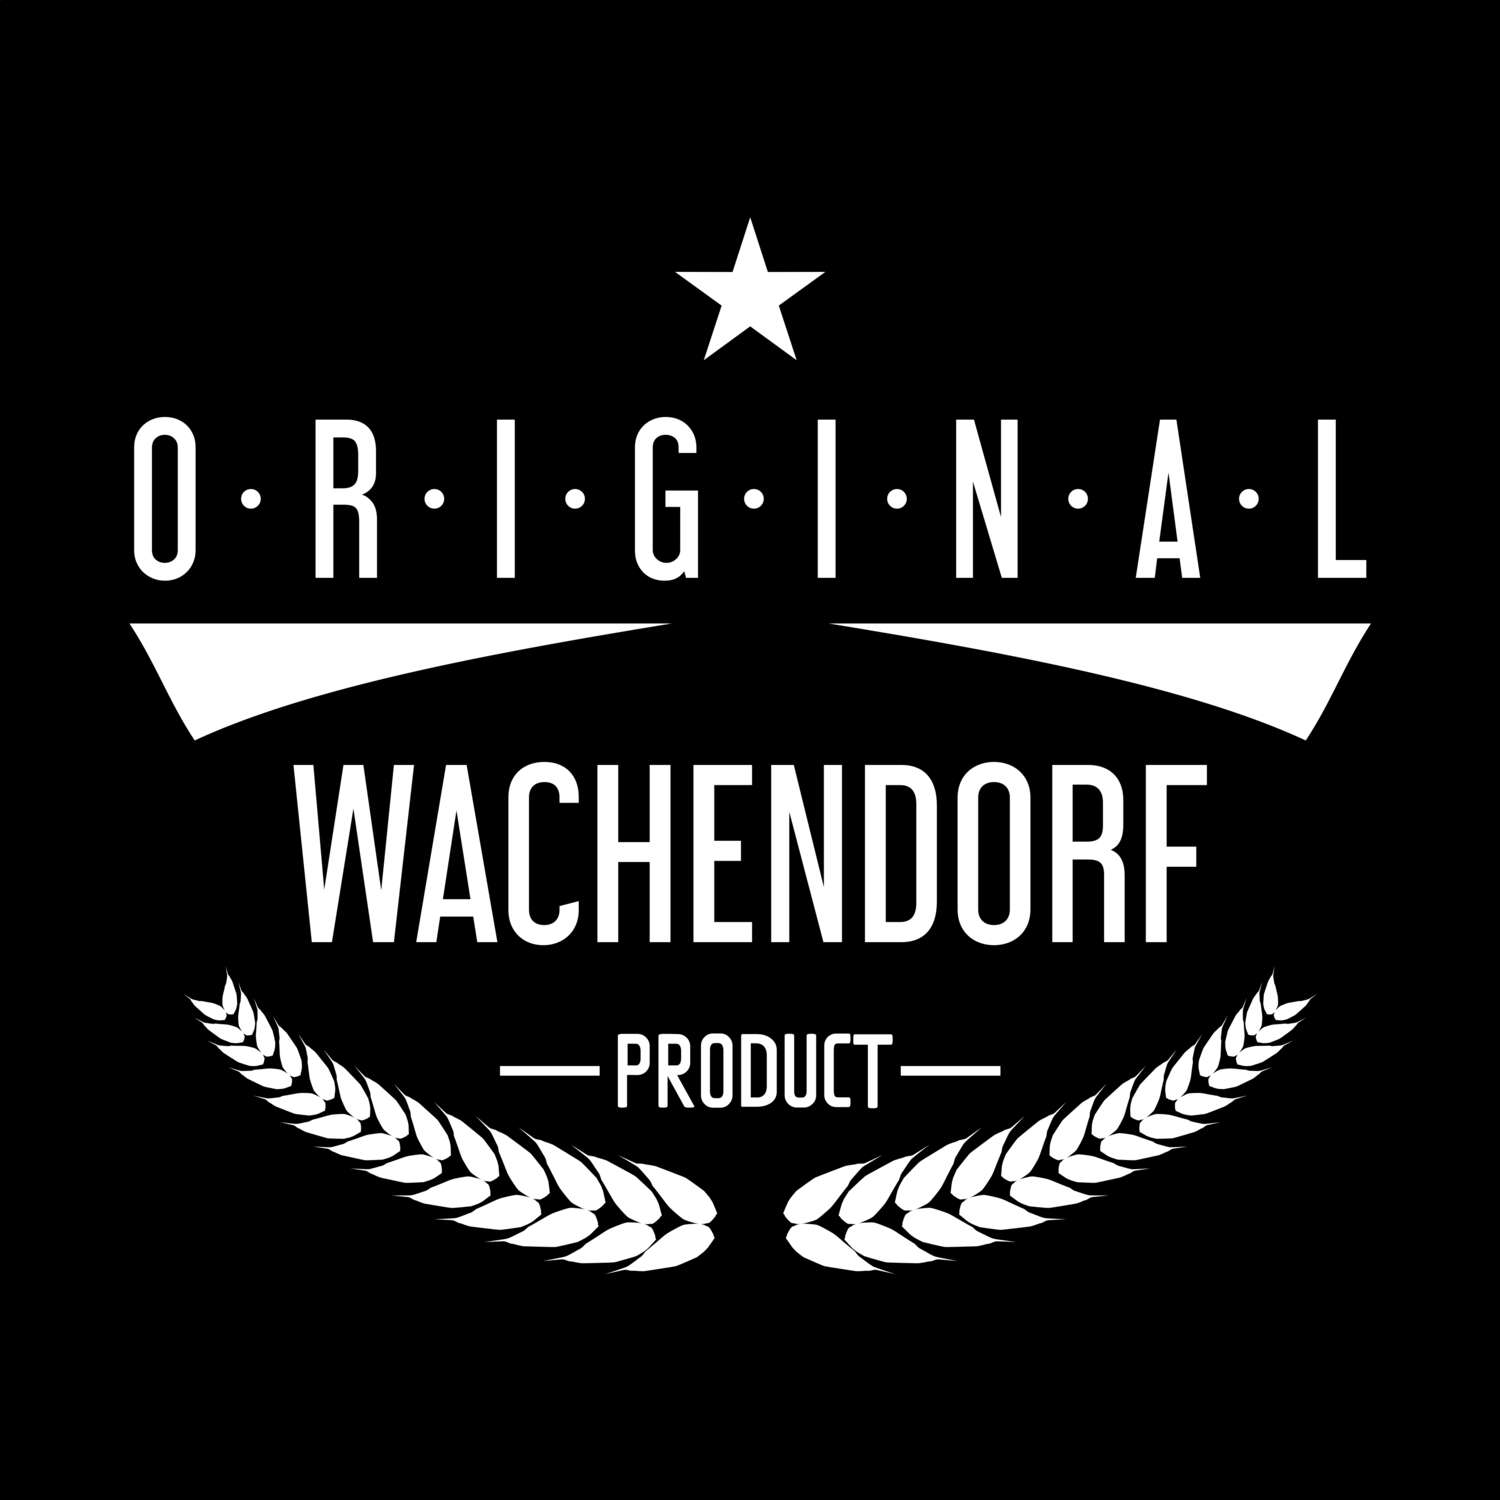 Wachendorf T-Shirt »Original Product«